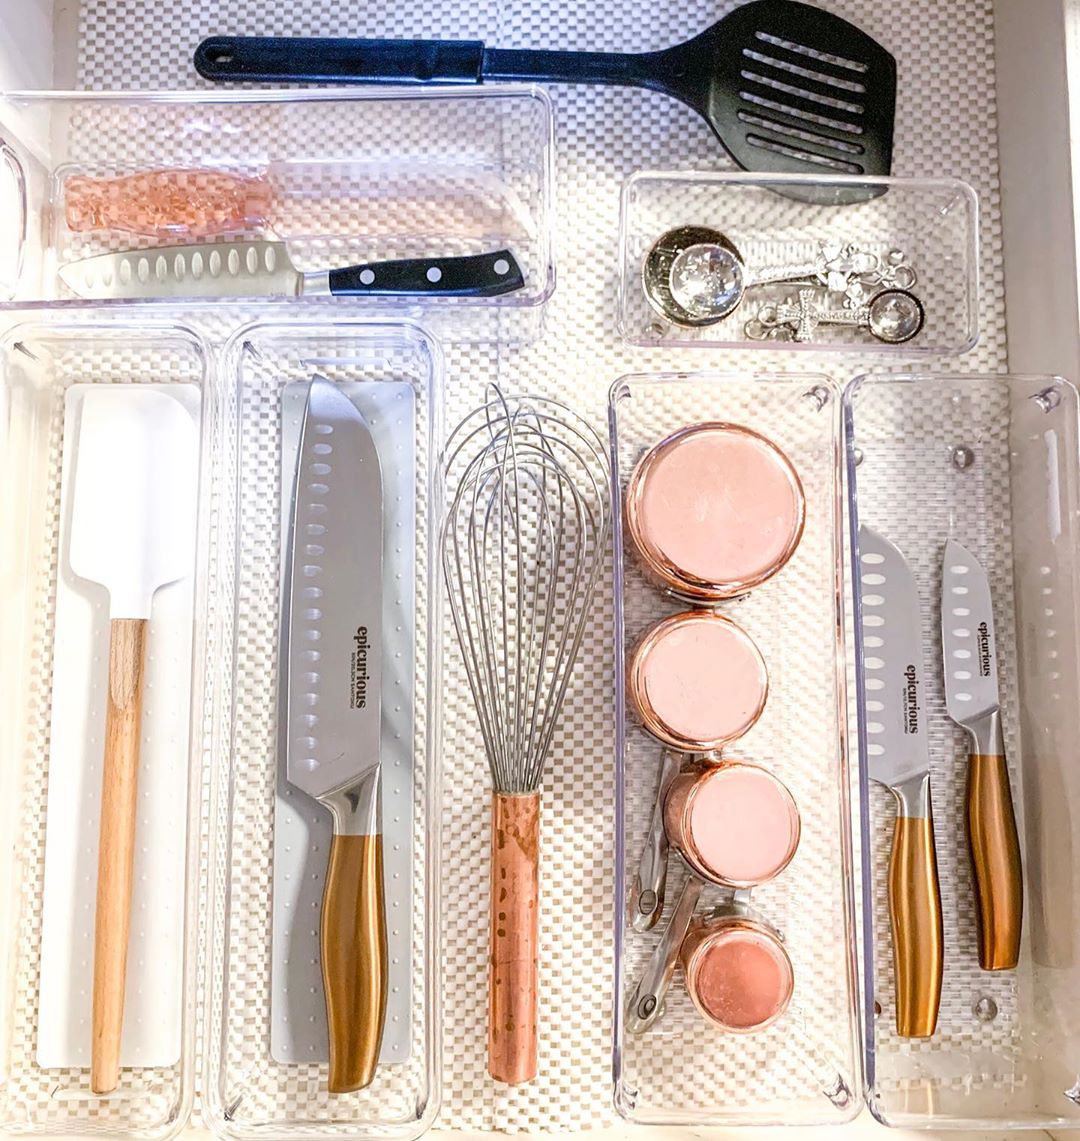 Organized kitchen utensil drawer. Photo by Instagram user @organizebeforeidie